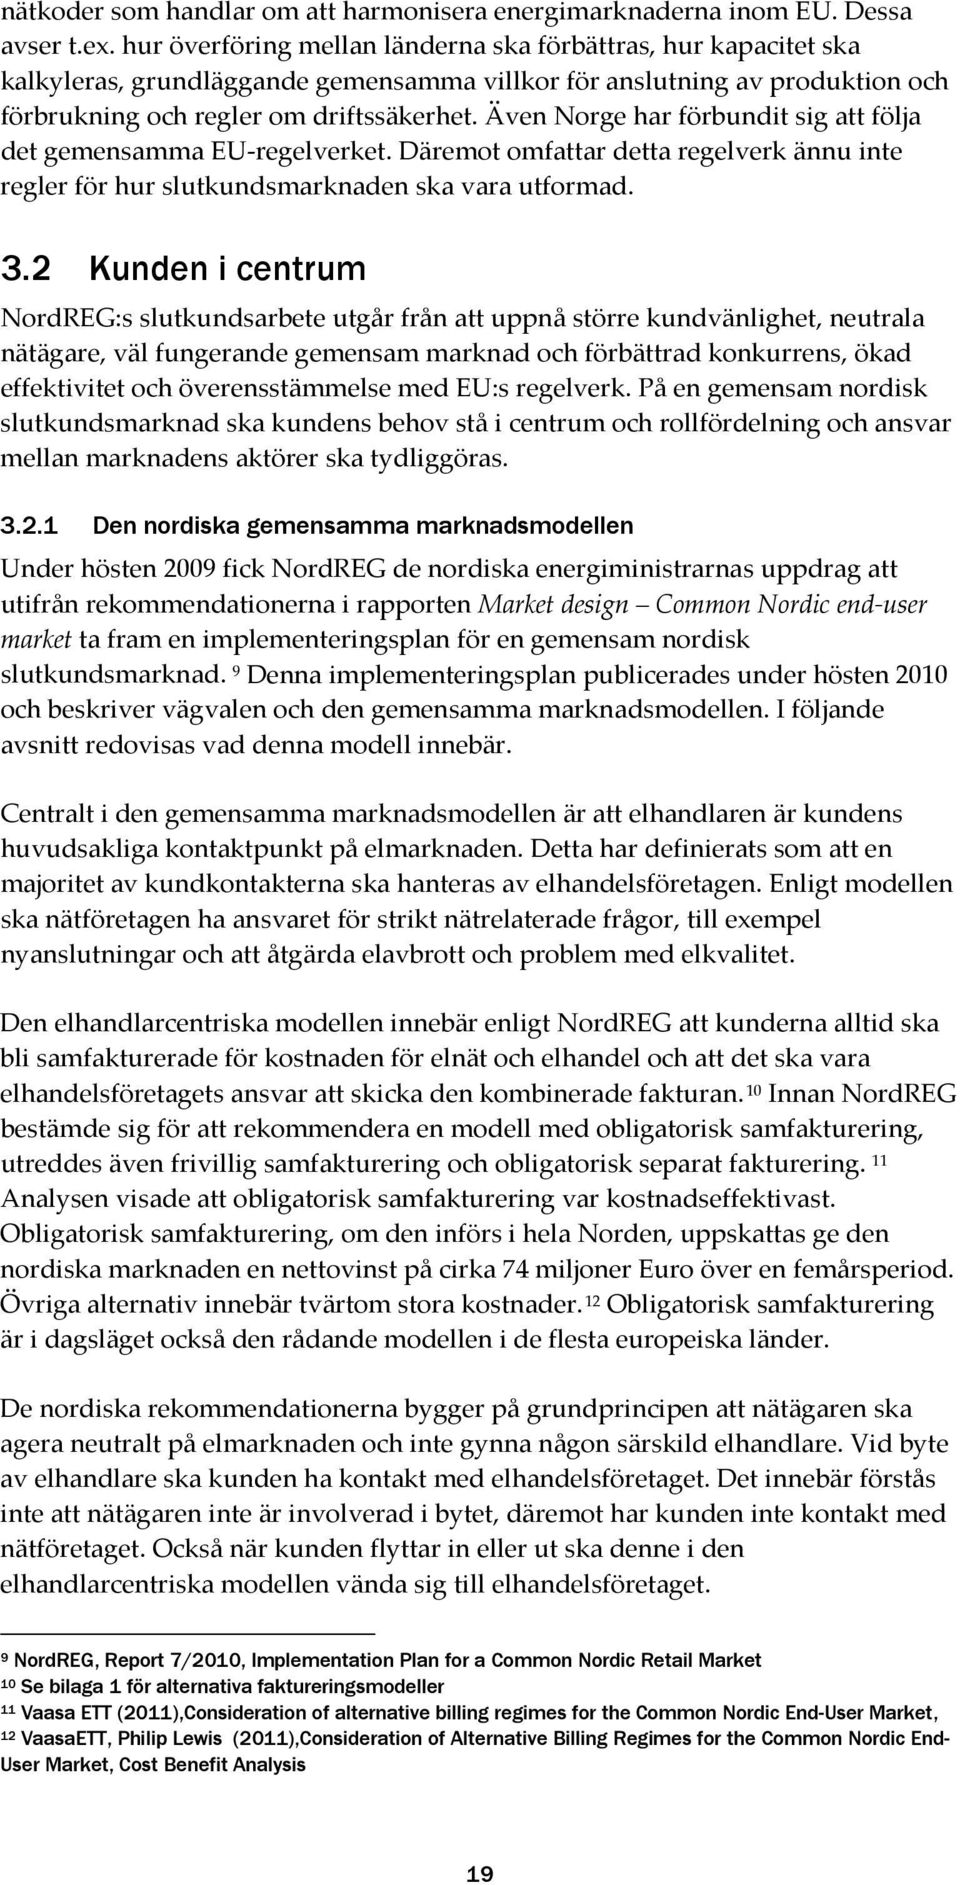 Även Norge har förbundit sig att följa det gemensamma EU-regelverket. Däremot omfattar detta regelverk ännu inte regler för hur slutkundsmarknaden ska vara utformad. 3.